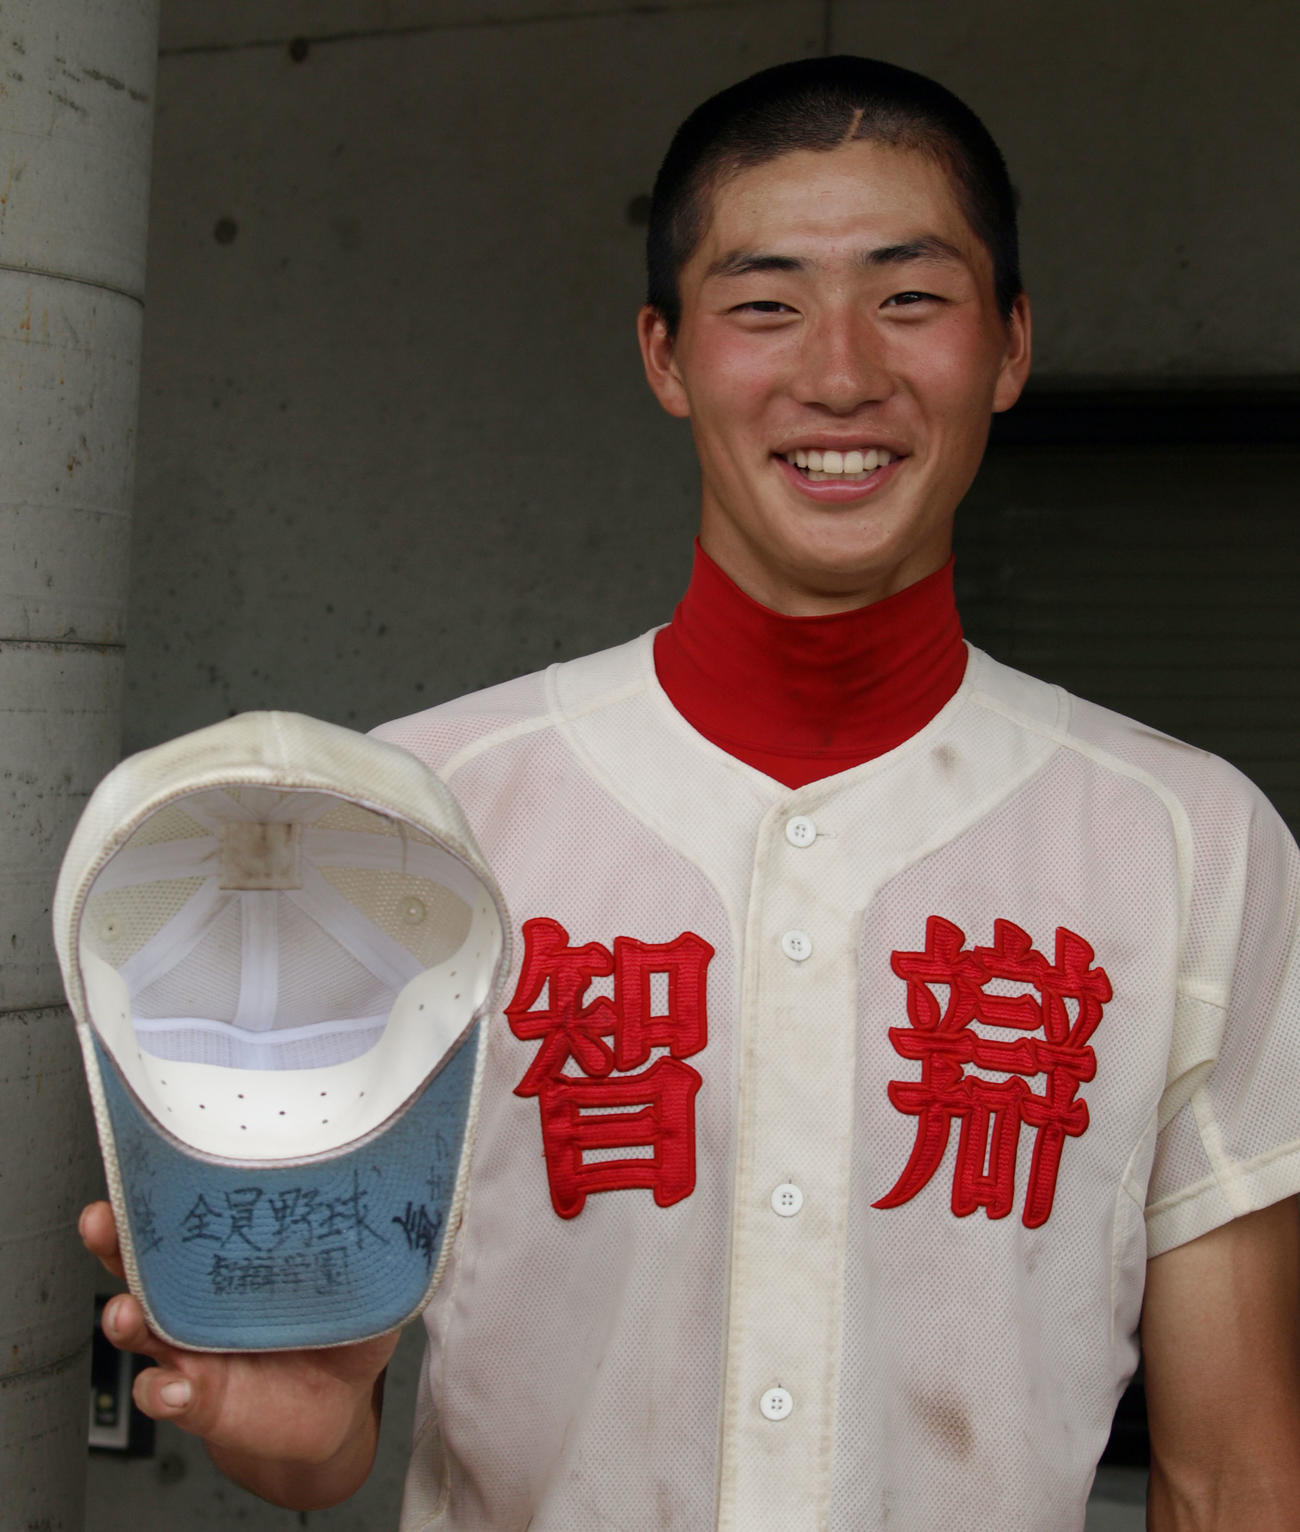 15年7月、智弁学園・広岡は1年先輩の巨人岡本から譲られた帽子を手に笑顔